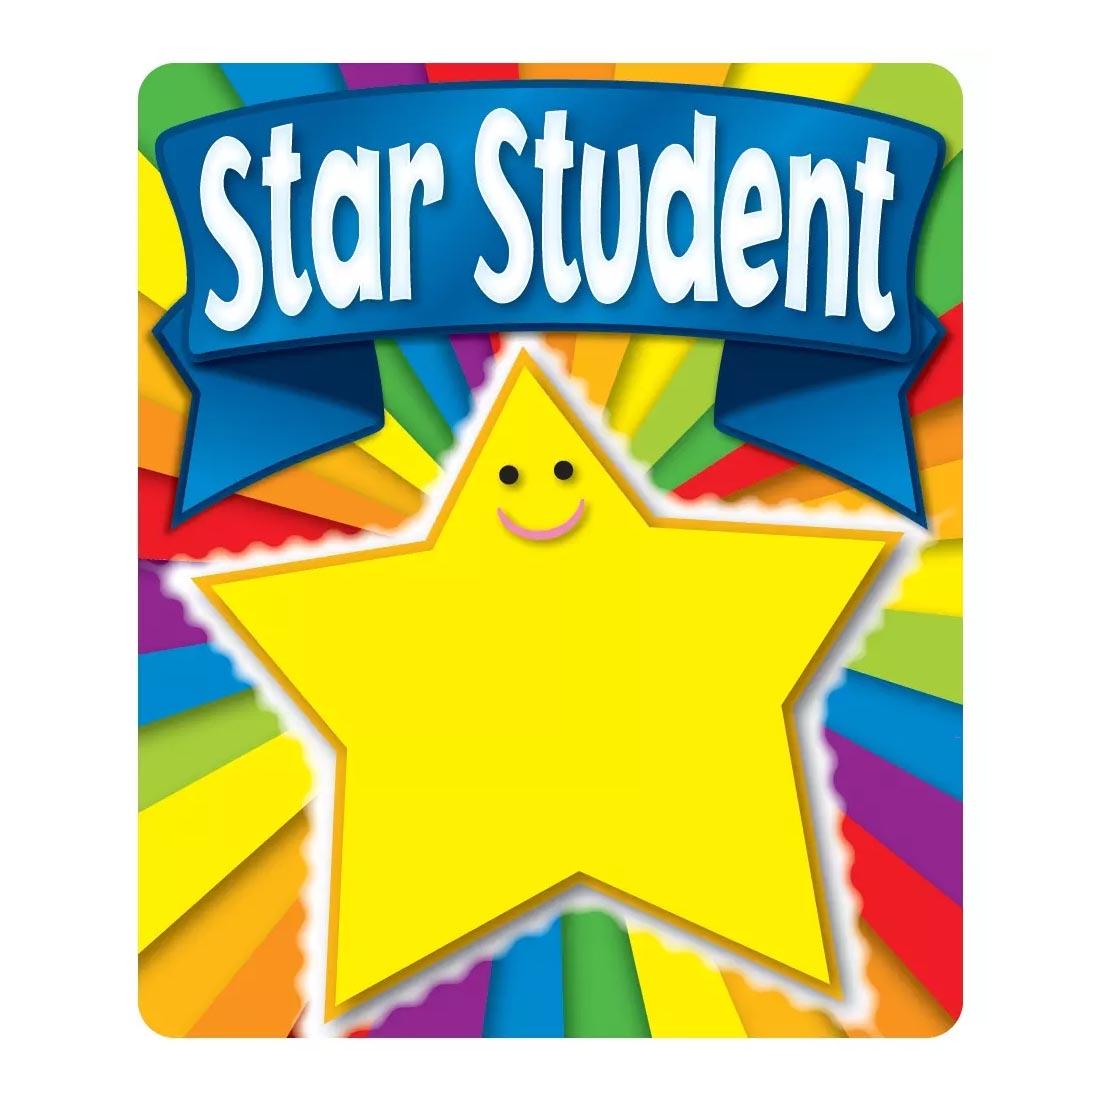 Star Student Braggin' Badge by Carson Dellosa